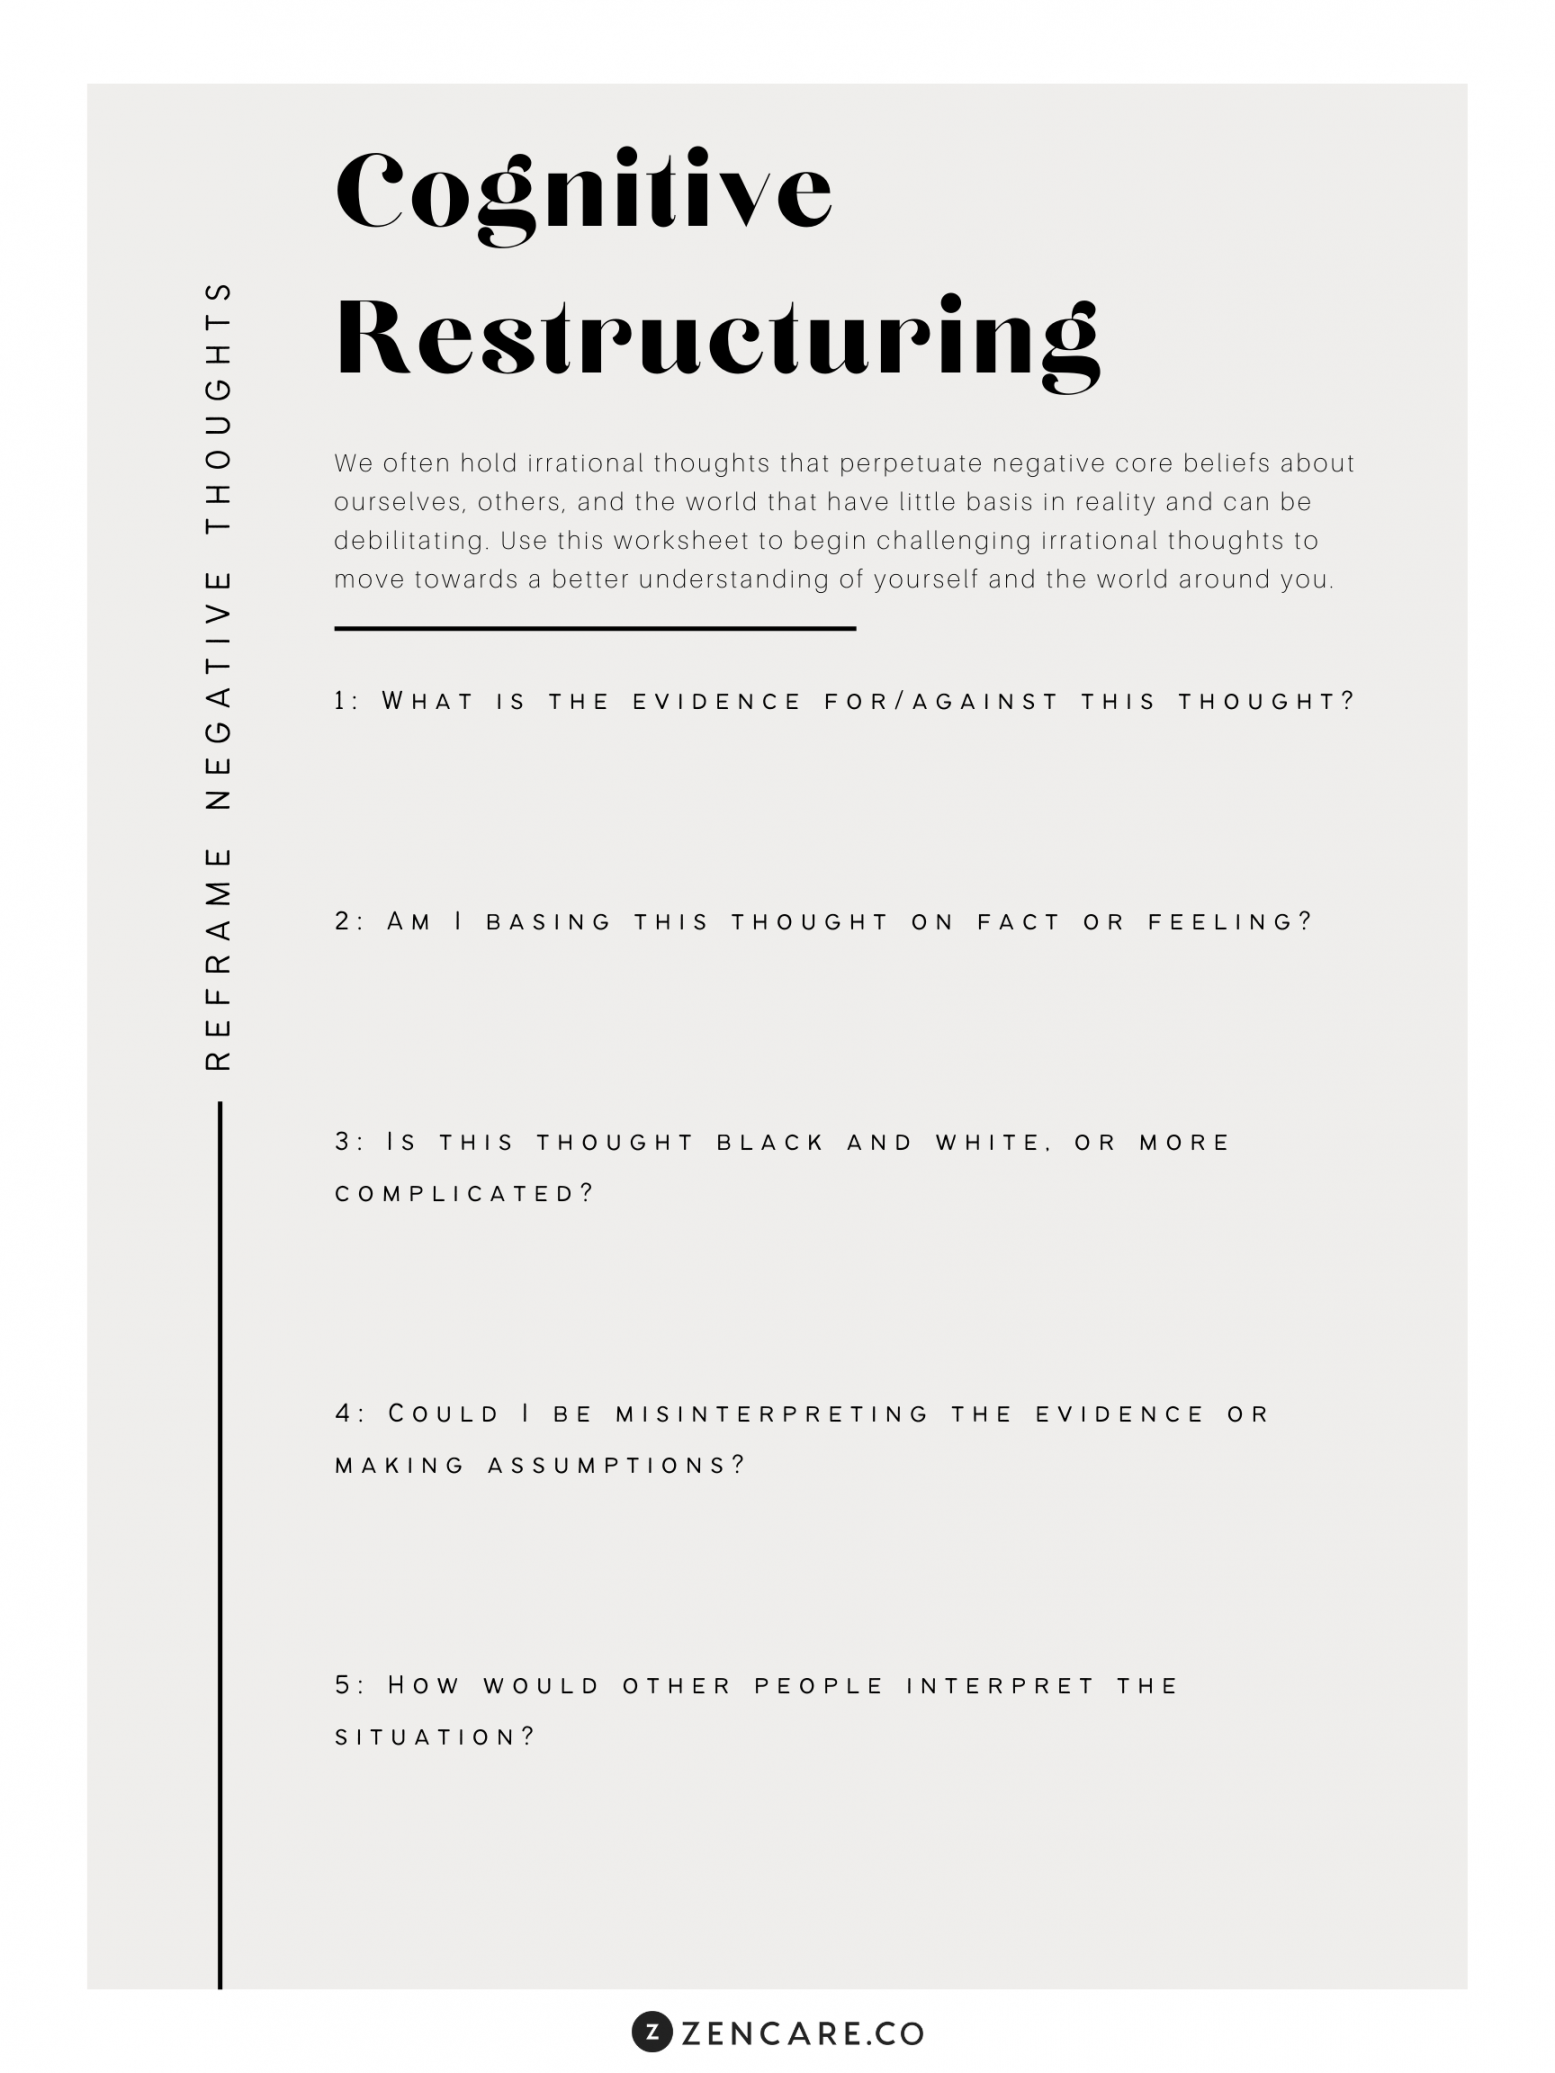 Cognitive Restructuring Worksheet - Zencare Blog